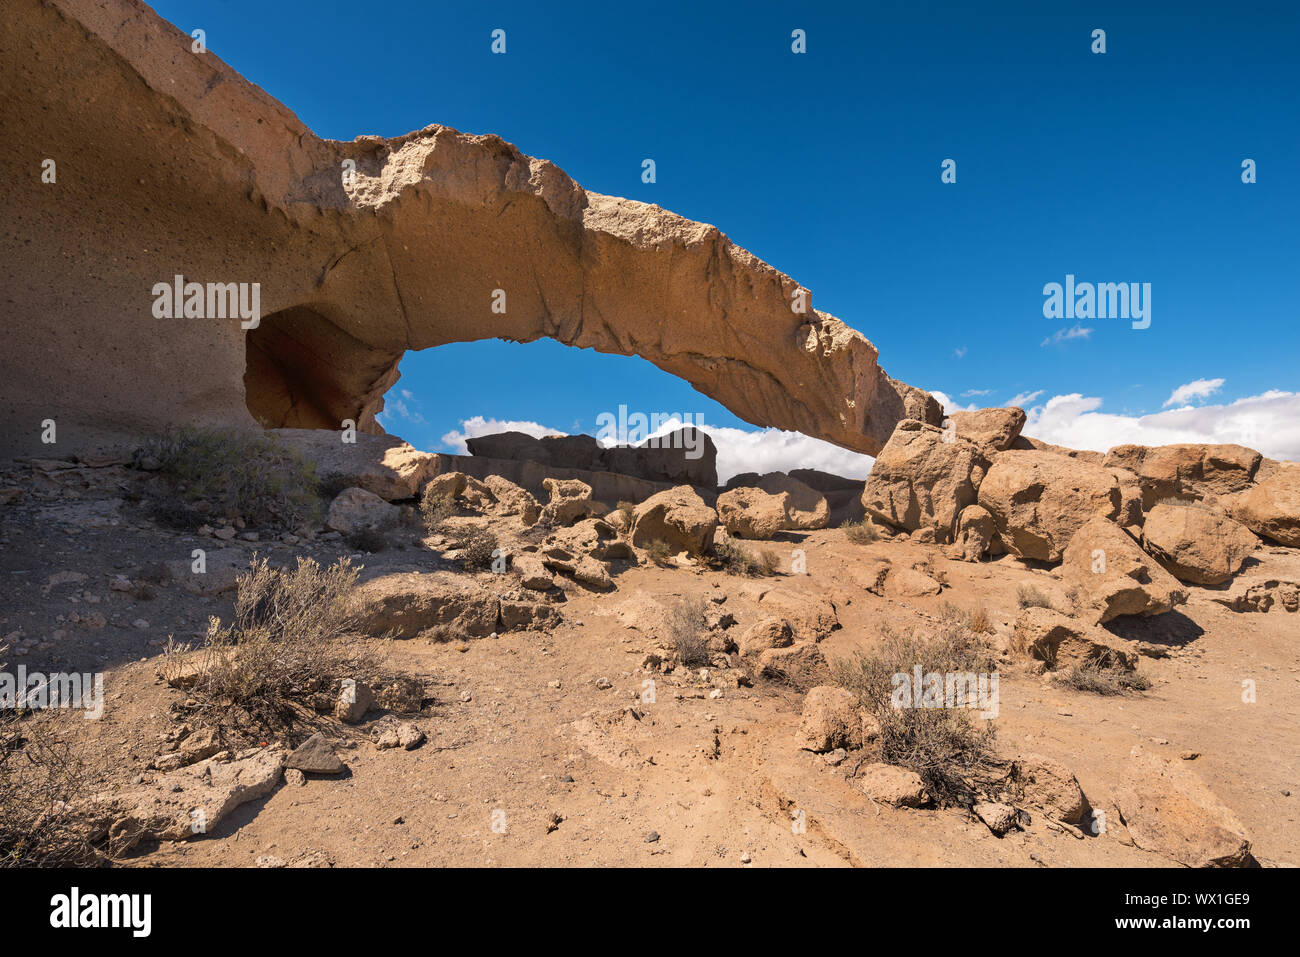 Natürliche Vulkangestein arch Bildung im Wüstenklima Landschaft in Teneriffa, Kanarische Inseln, Spanien. Stockfoto